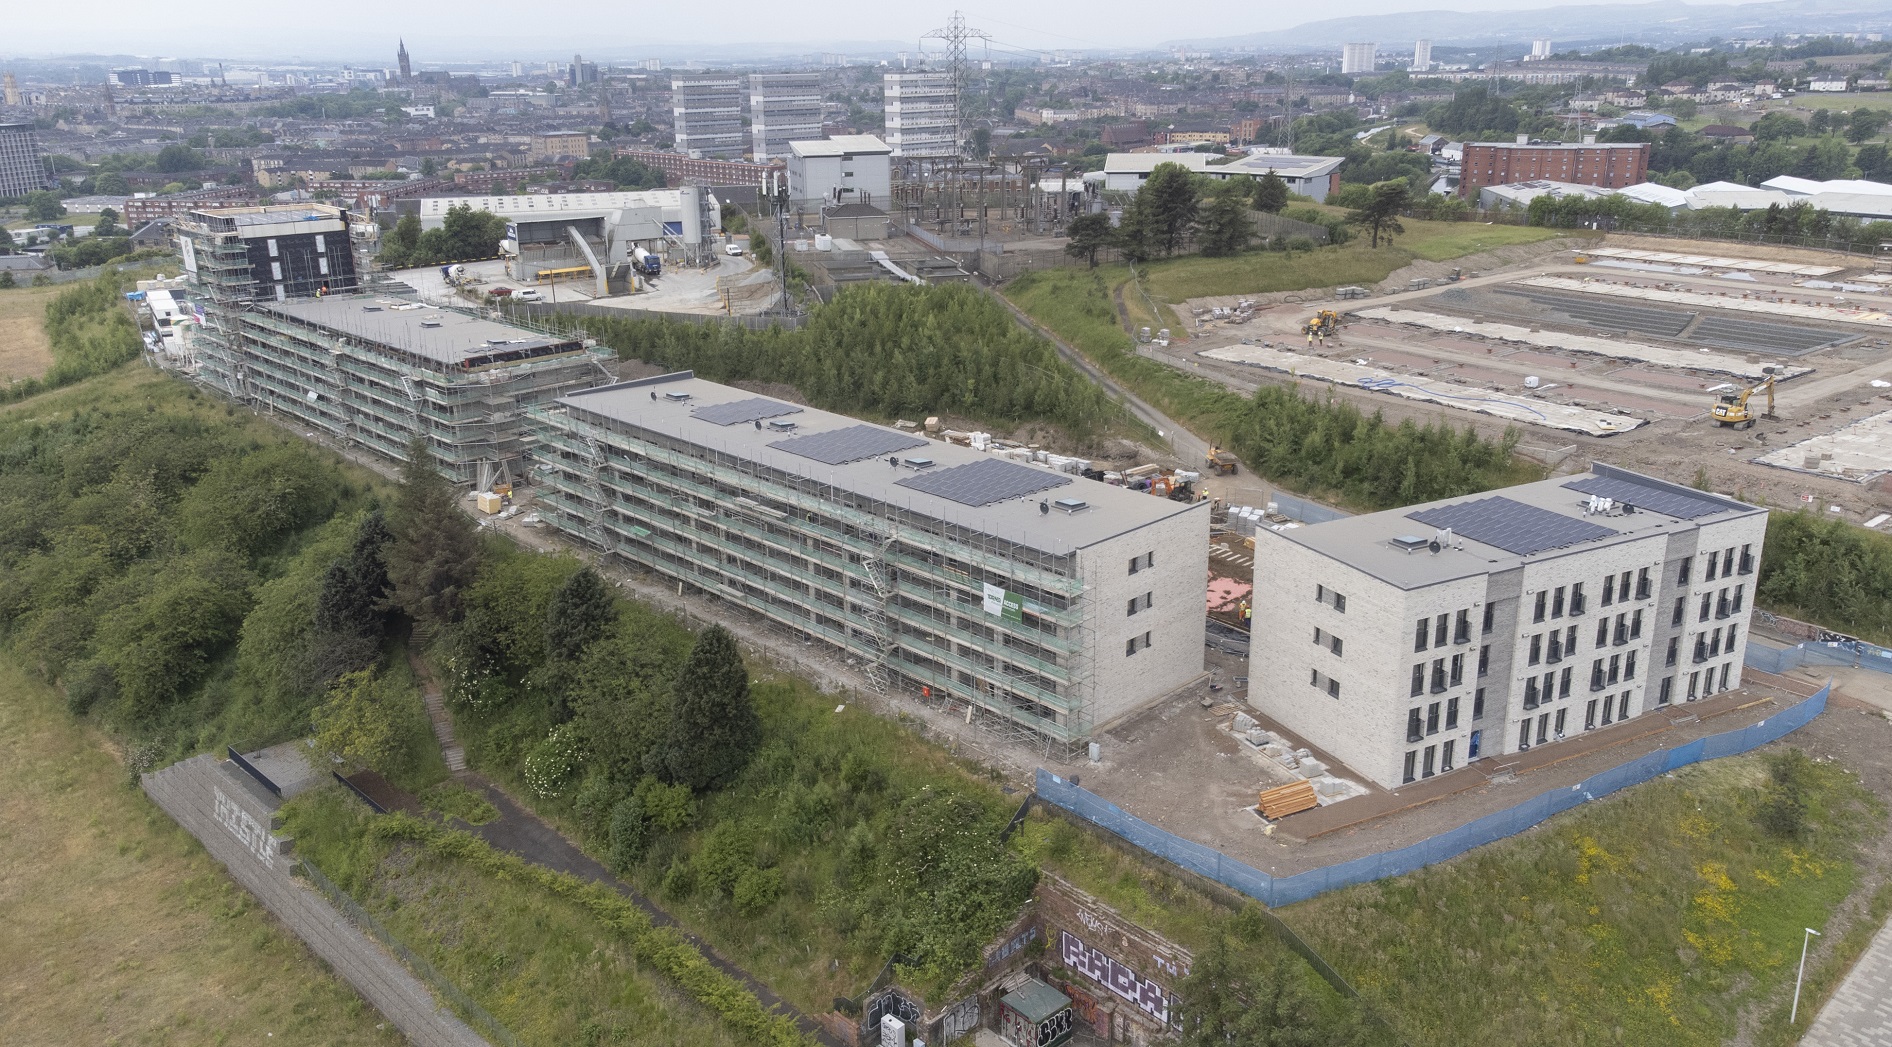 Zero carbon buildings minister checks progress at Scotland’s largest Passivhaus development